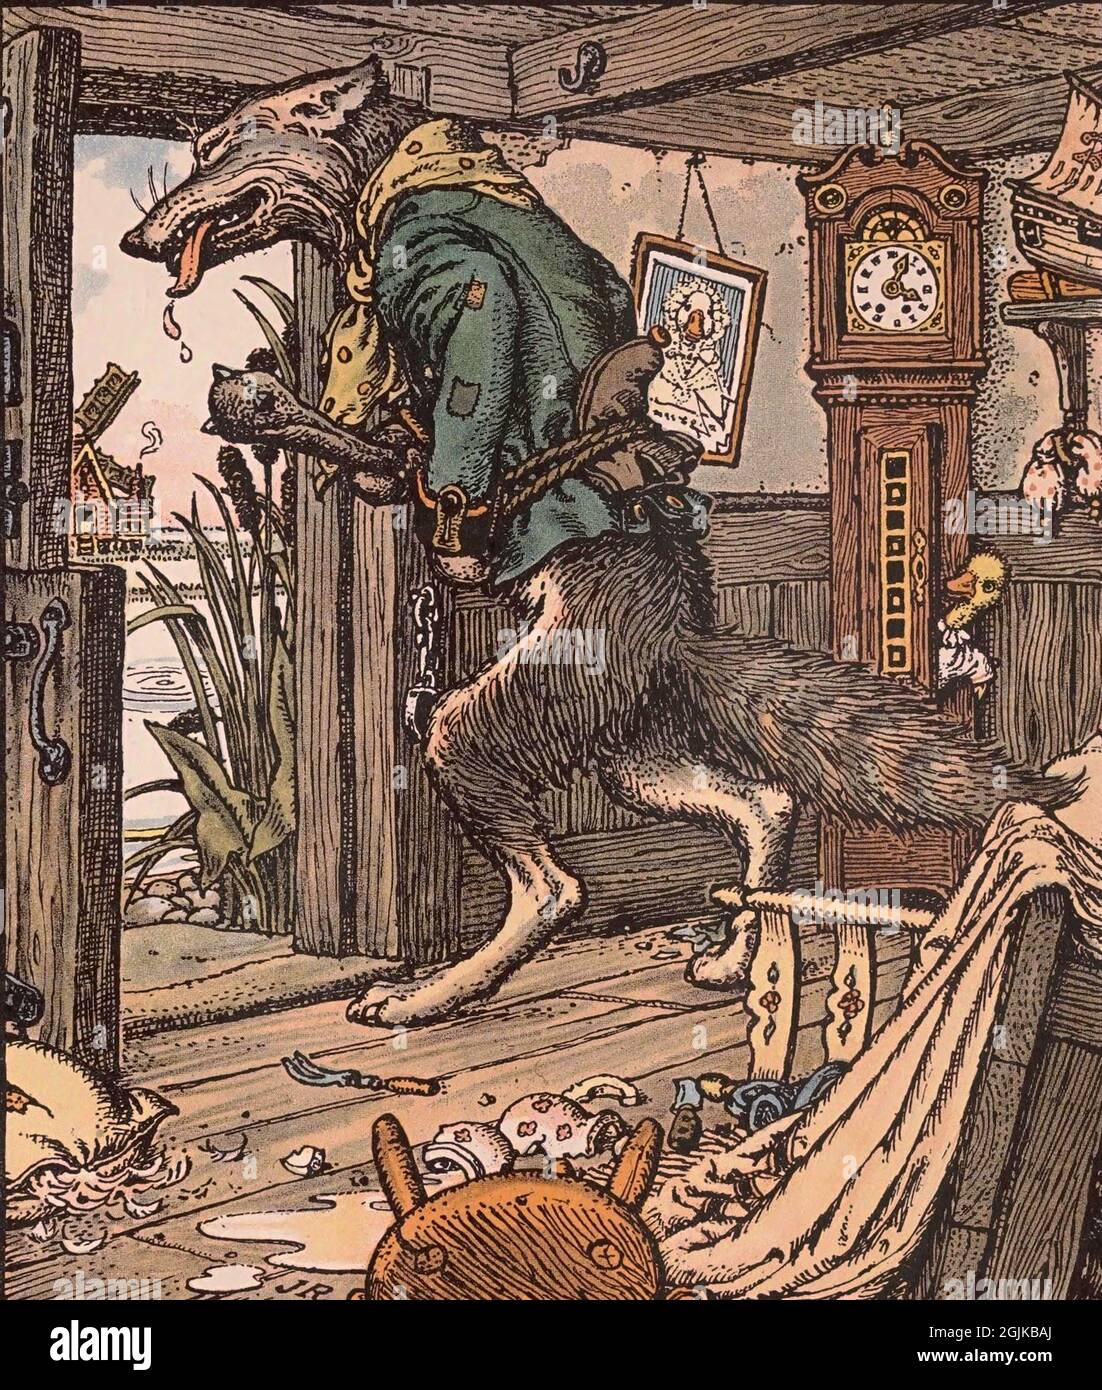 Ilustración del libro Grmm's animal stories El gosling más youghest escapes Foto de stock